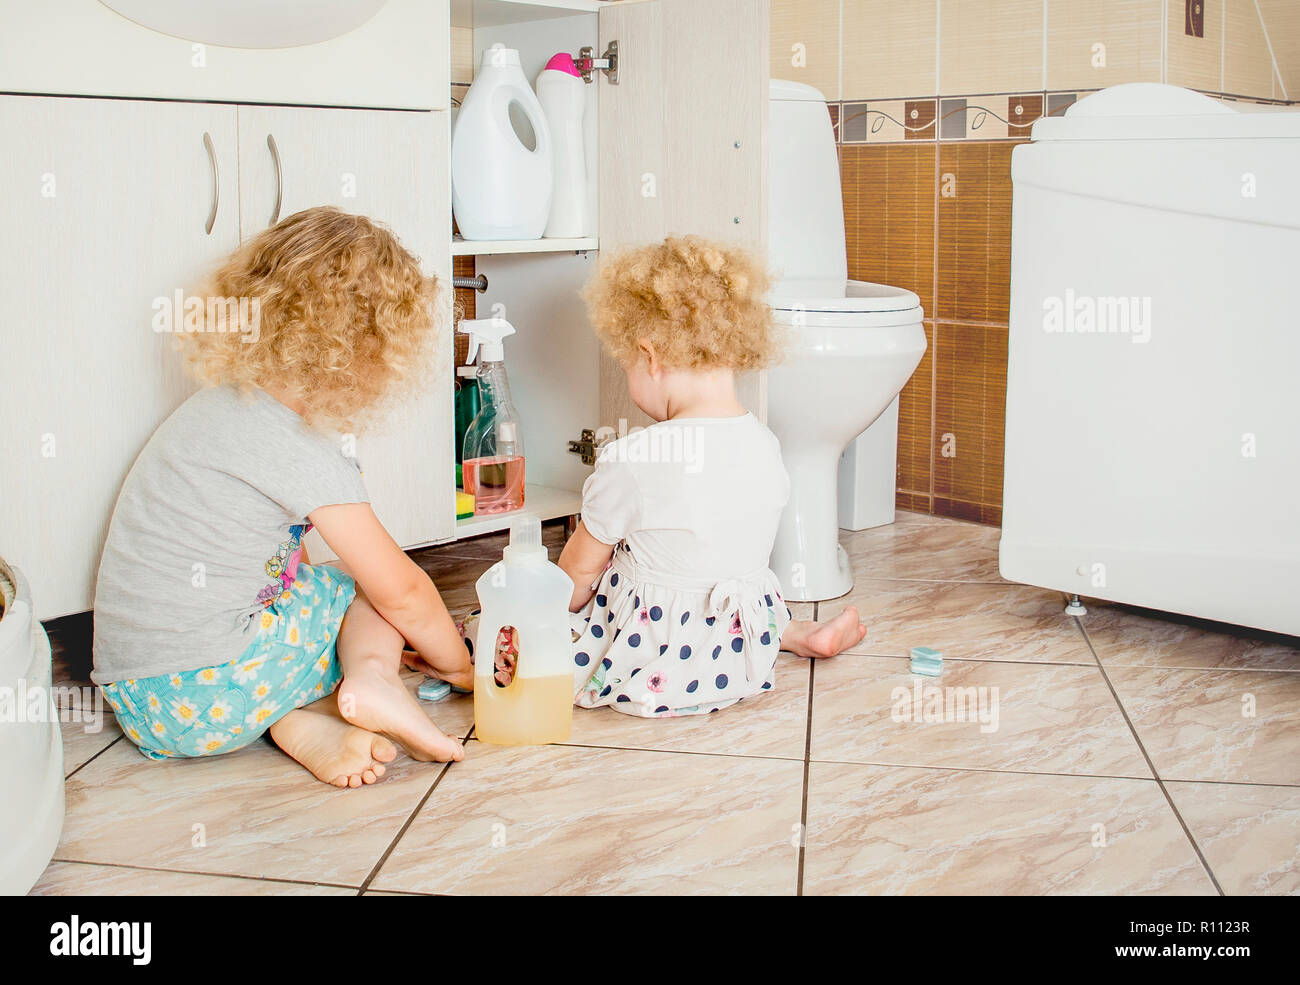 Reglas de seguridad en la cocina para niños - Children's Health